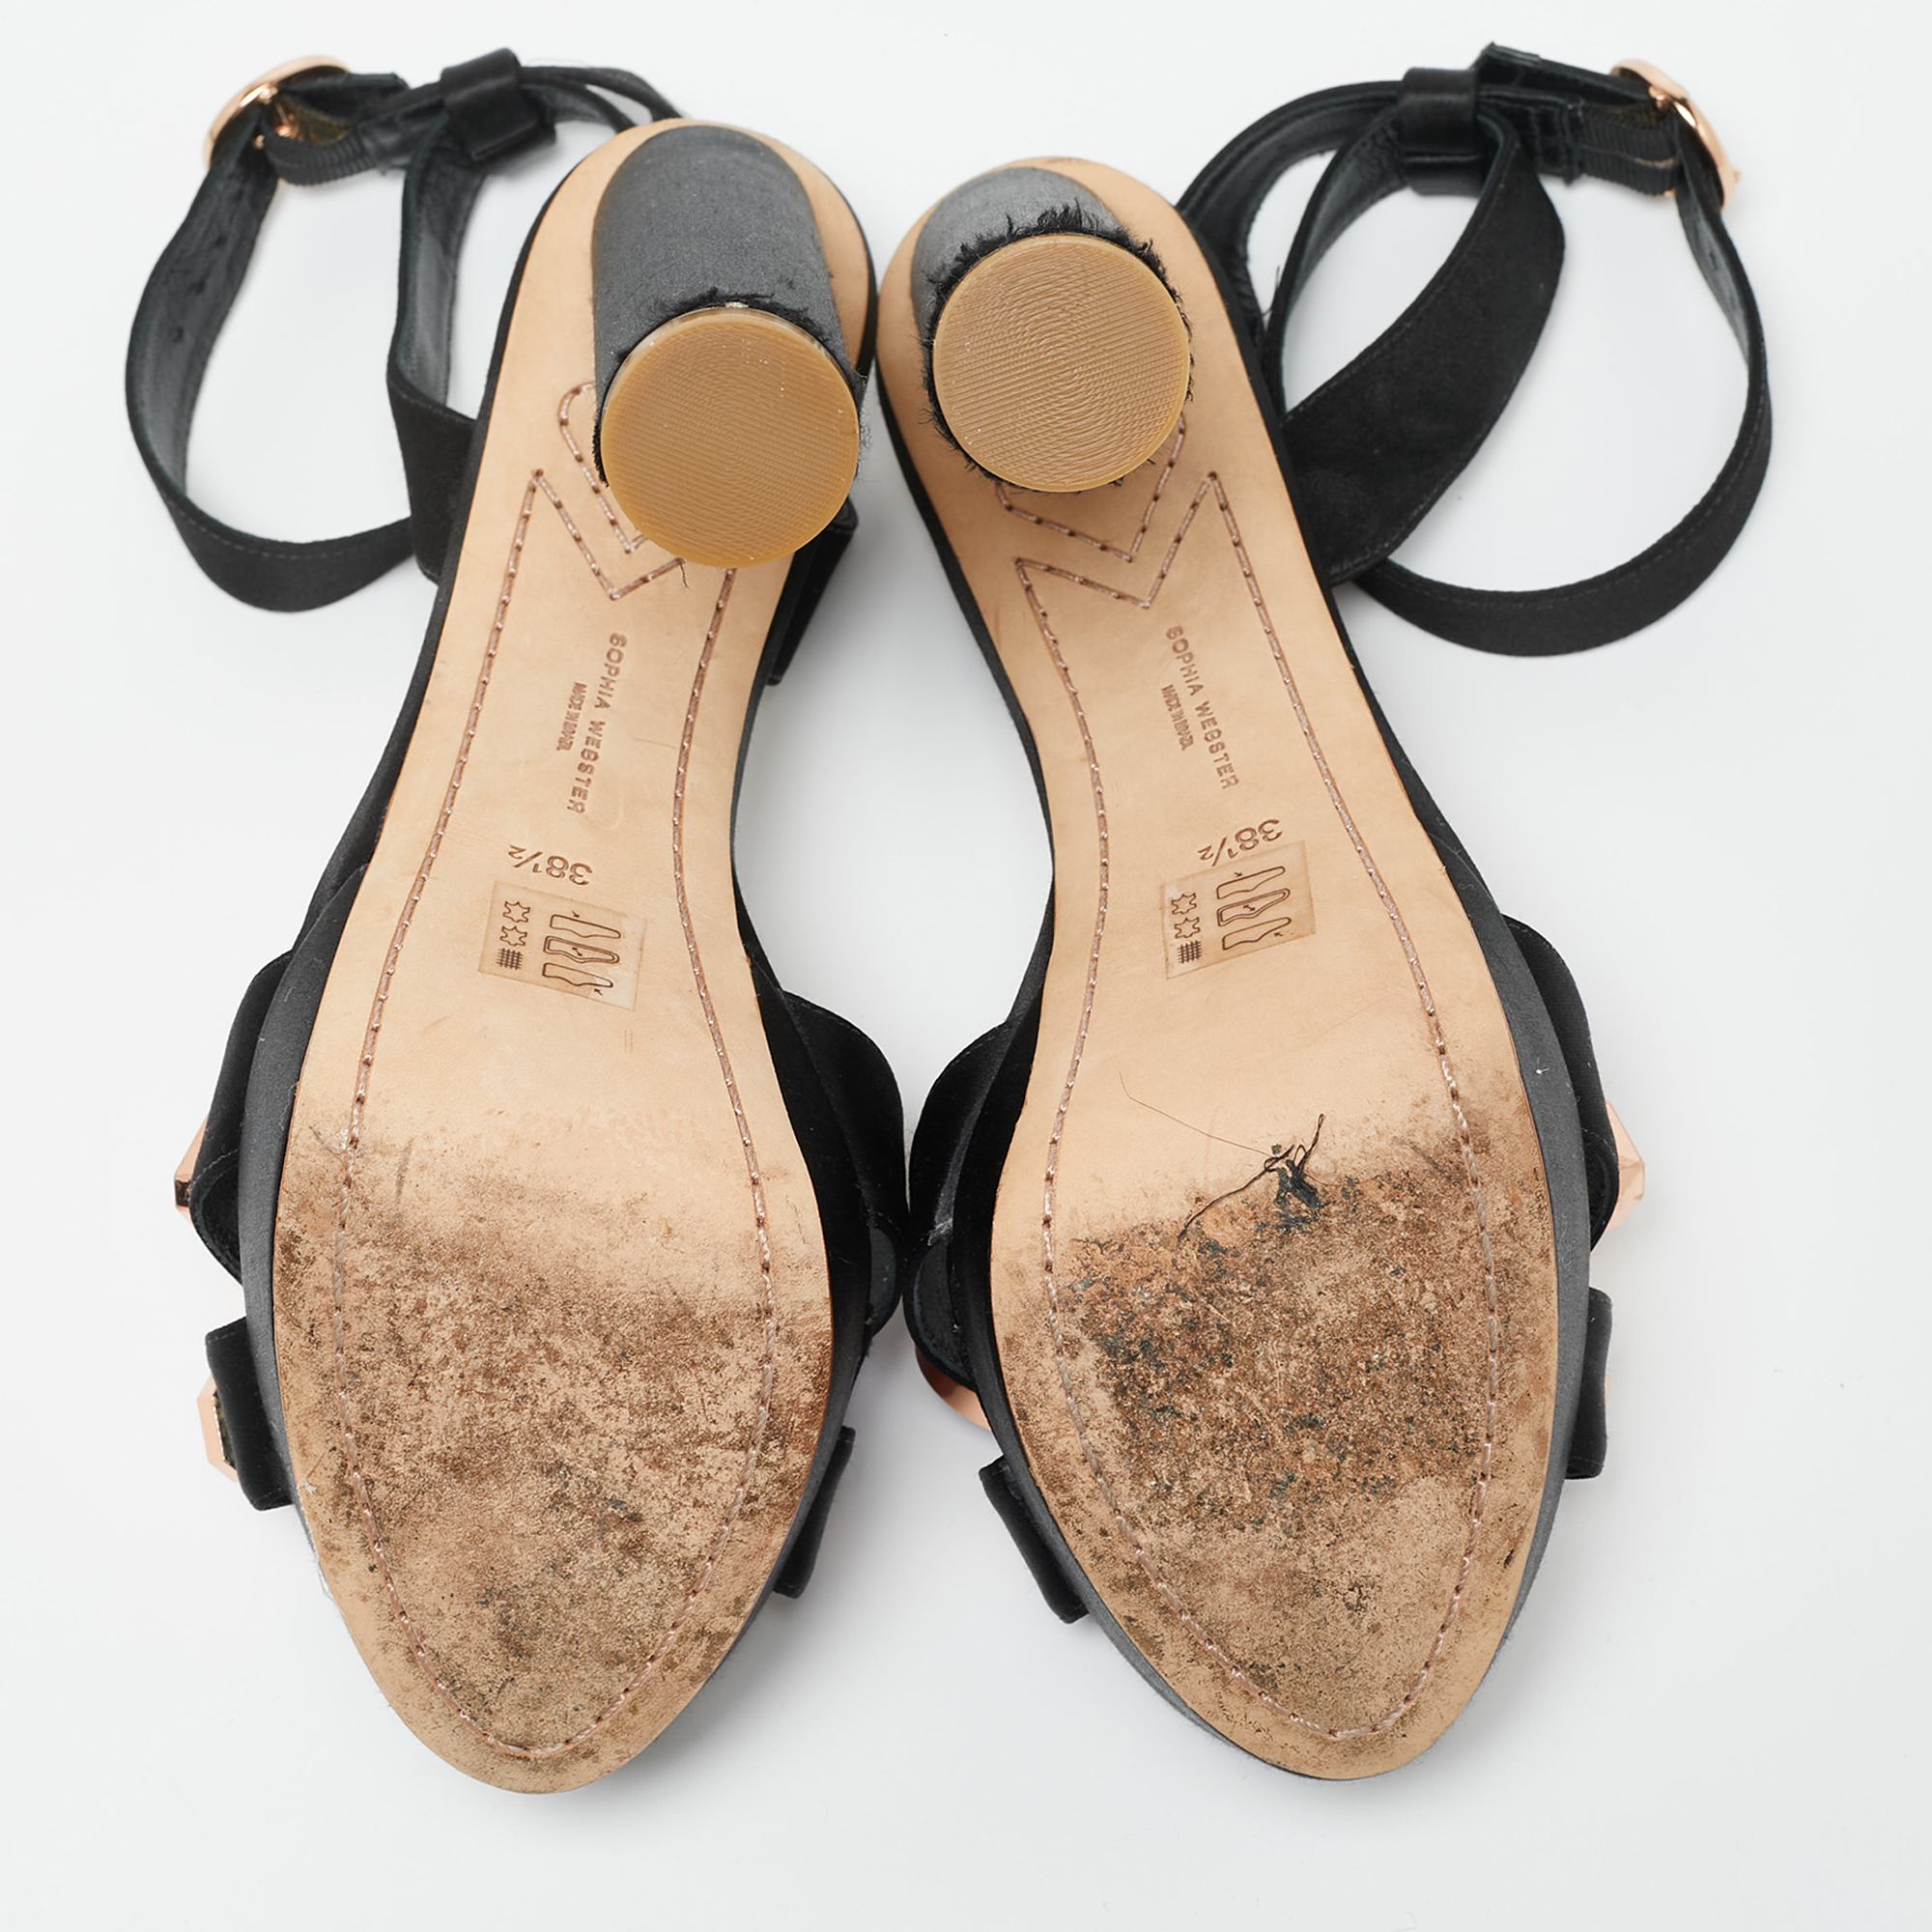 Sophia Webster Black Satin Amanda Gem Platform Sandals Size 38.5